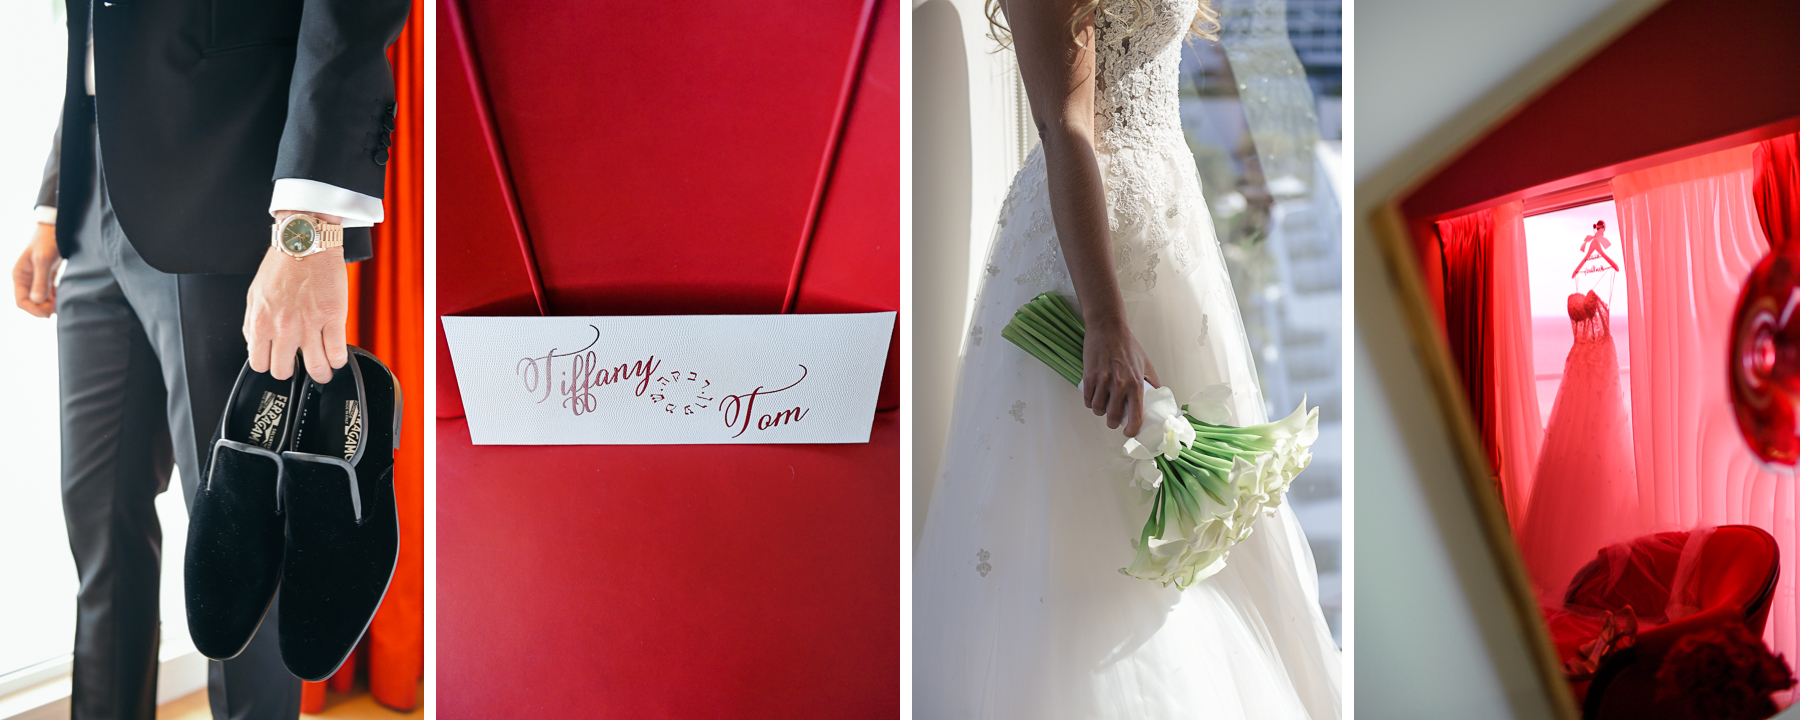 Wedding invitation picture at Faena Hotel Miami Beach